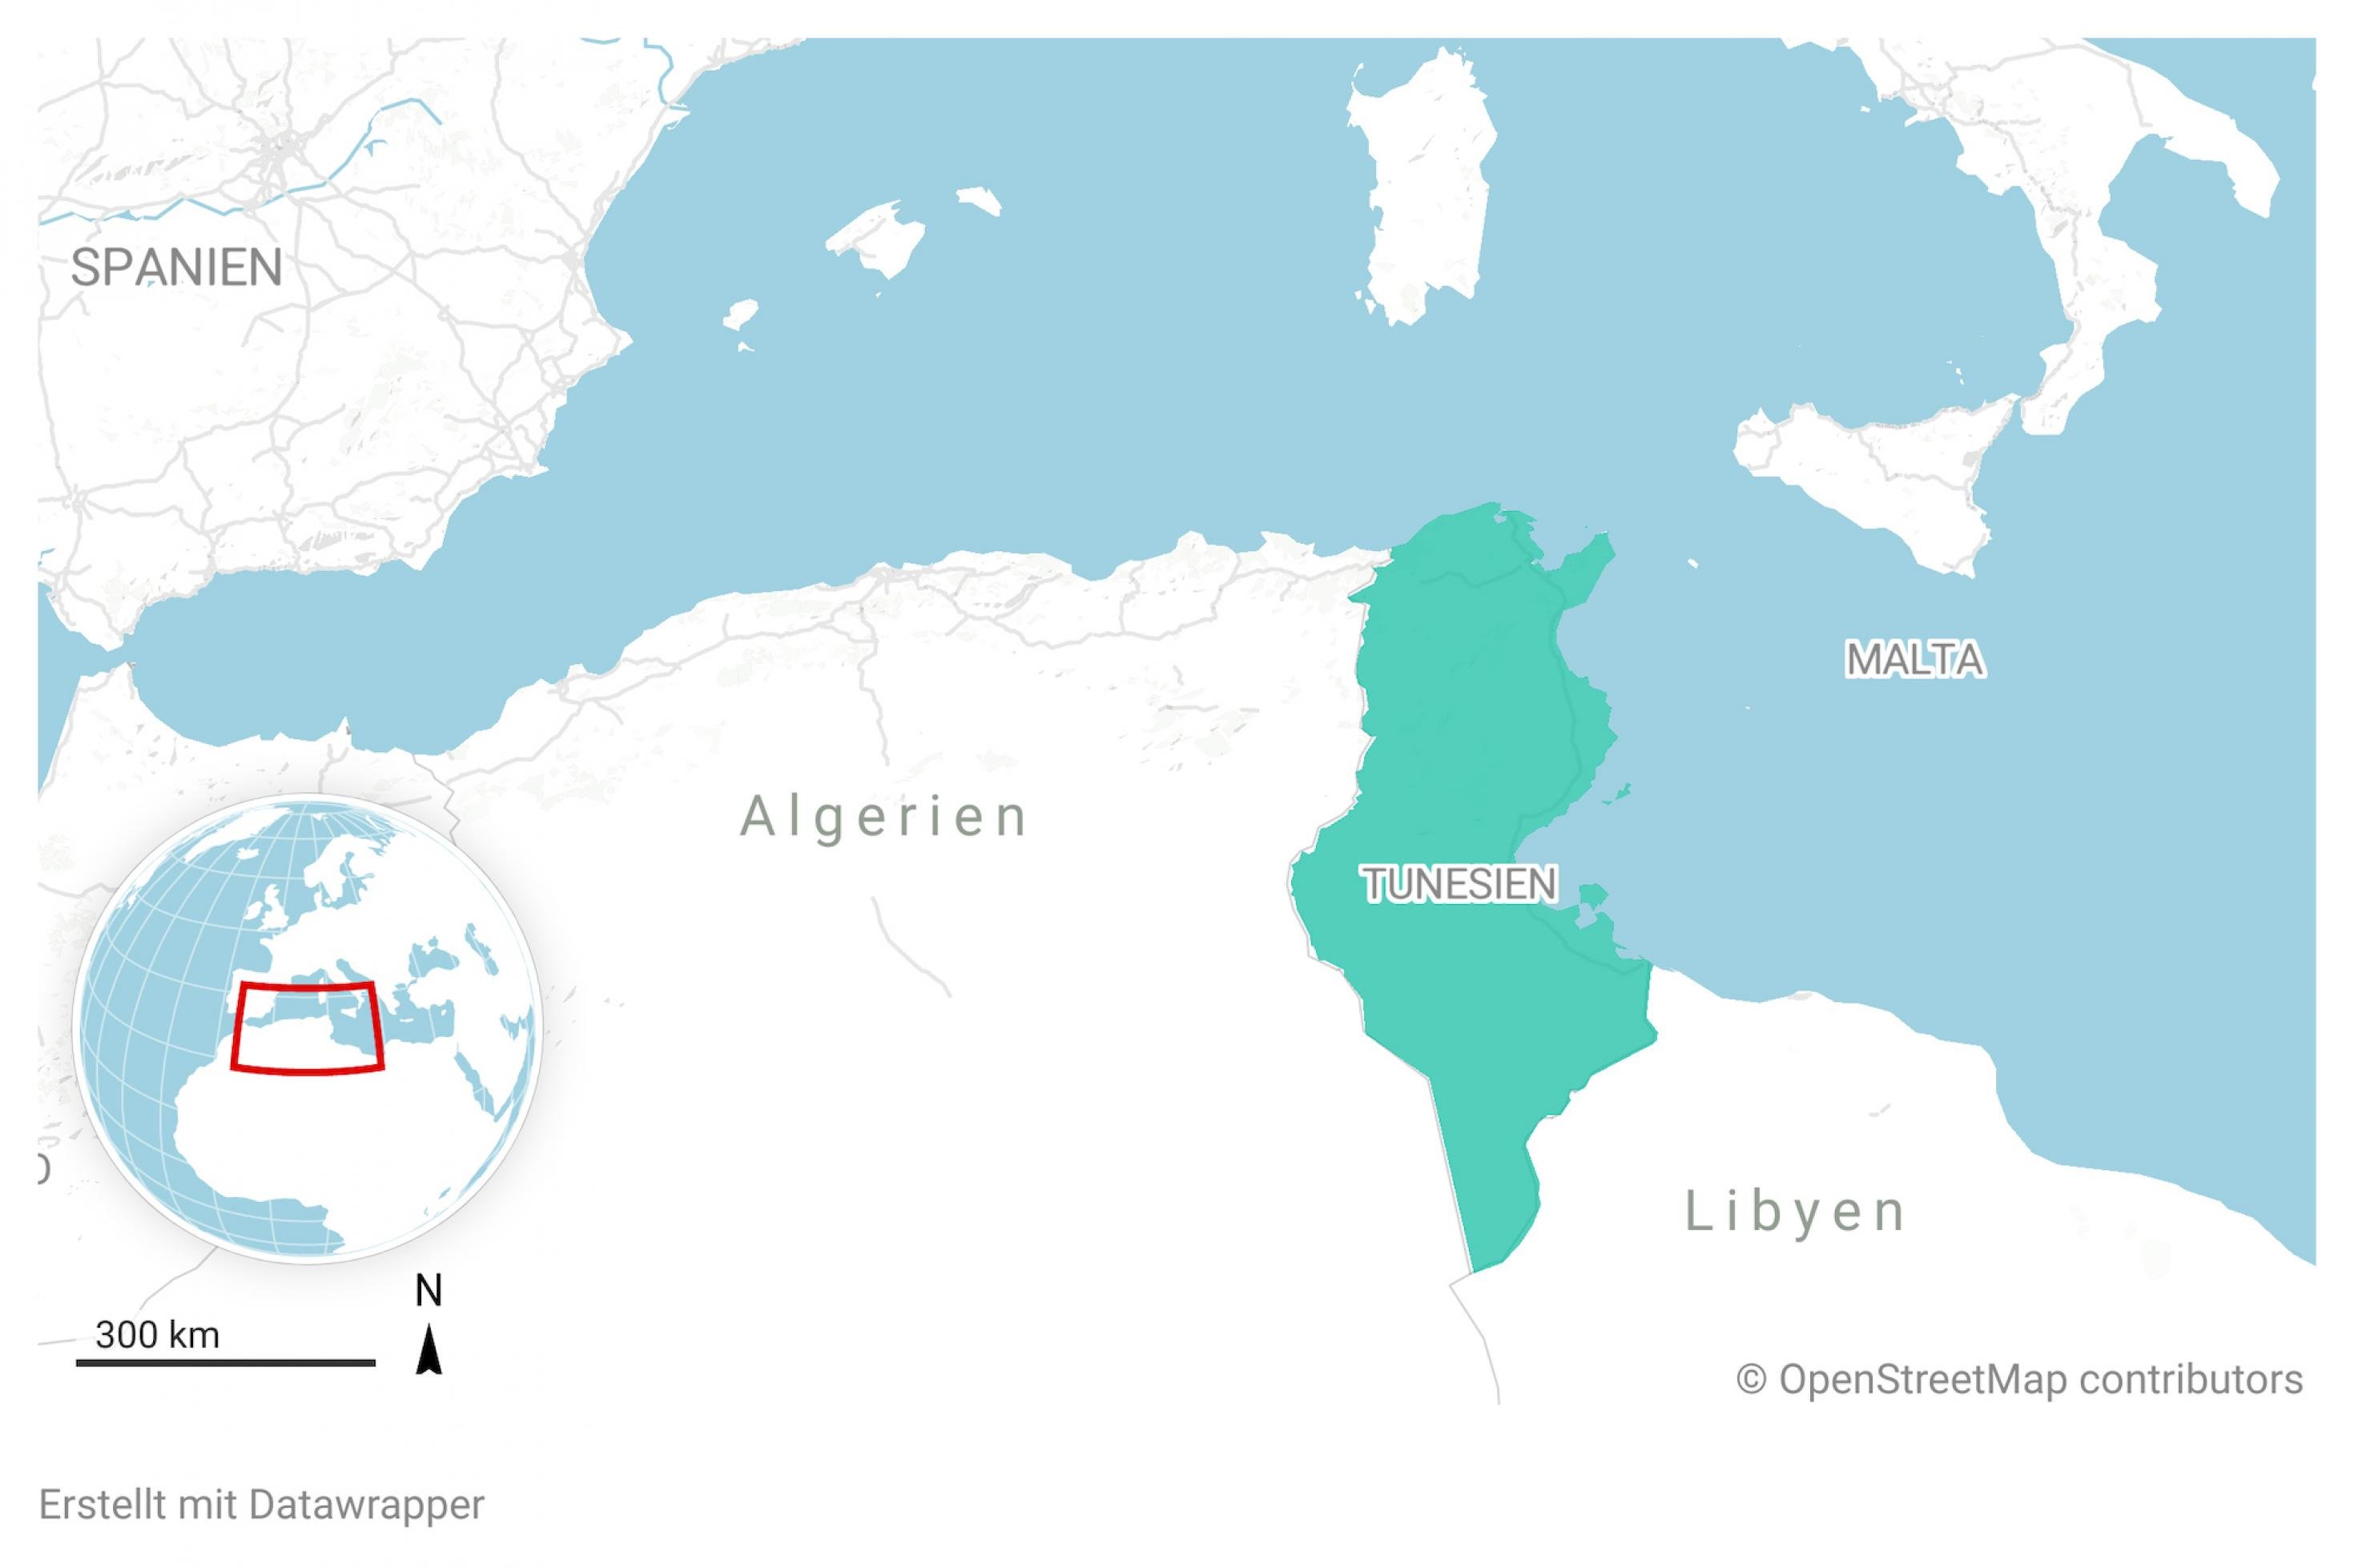 Ausschnitt aus einer Landkarte von Afrika. Das Land Tunesien ist farblich hervorgehoben.